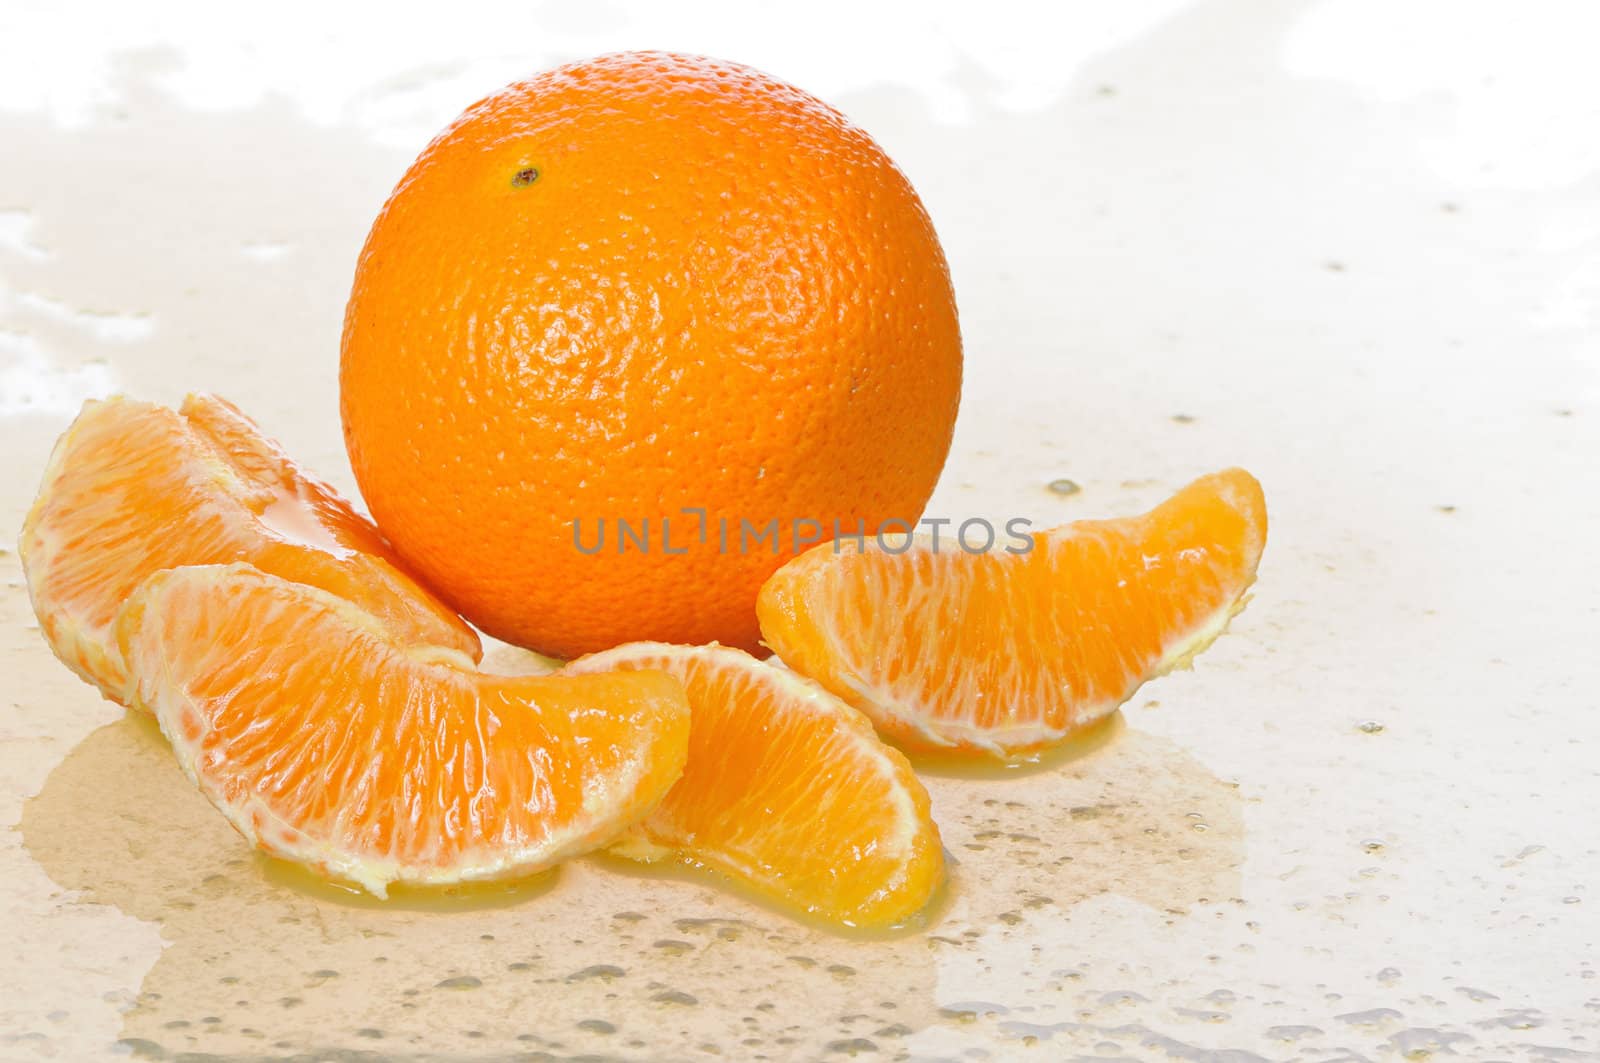 orange fruit by uriy2007